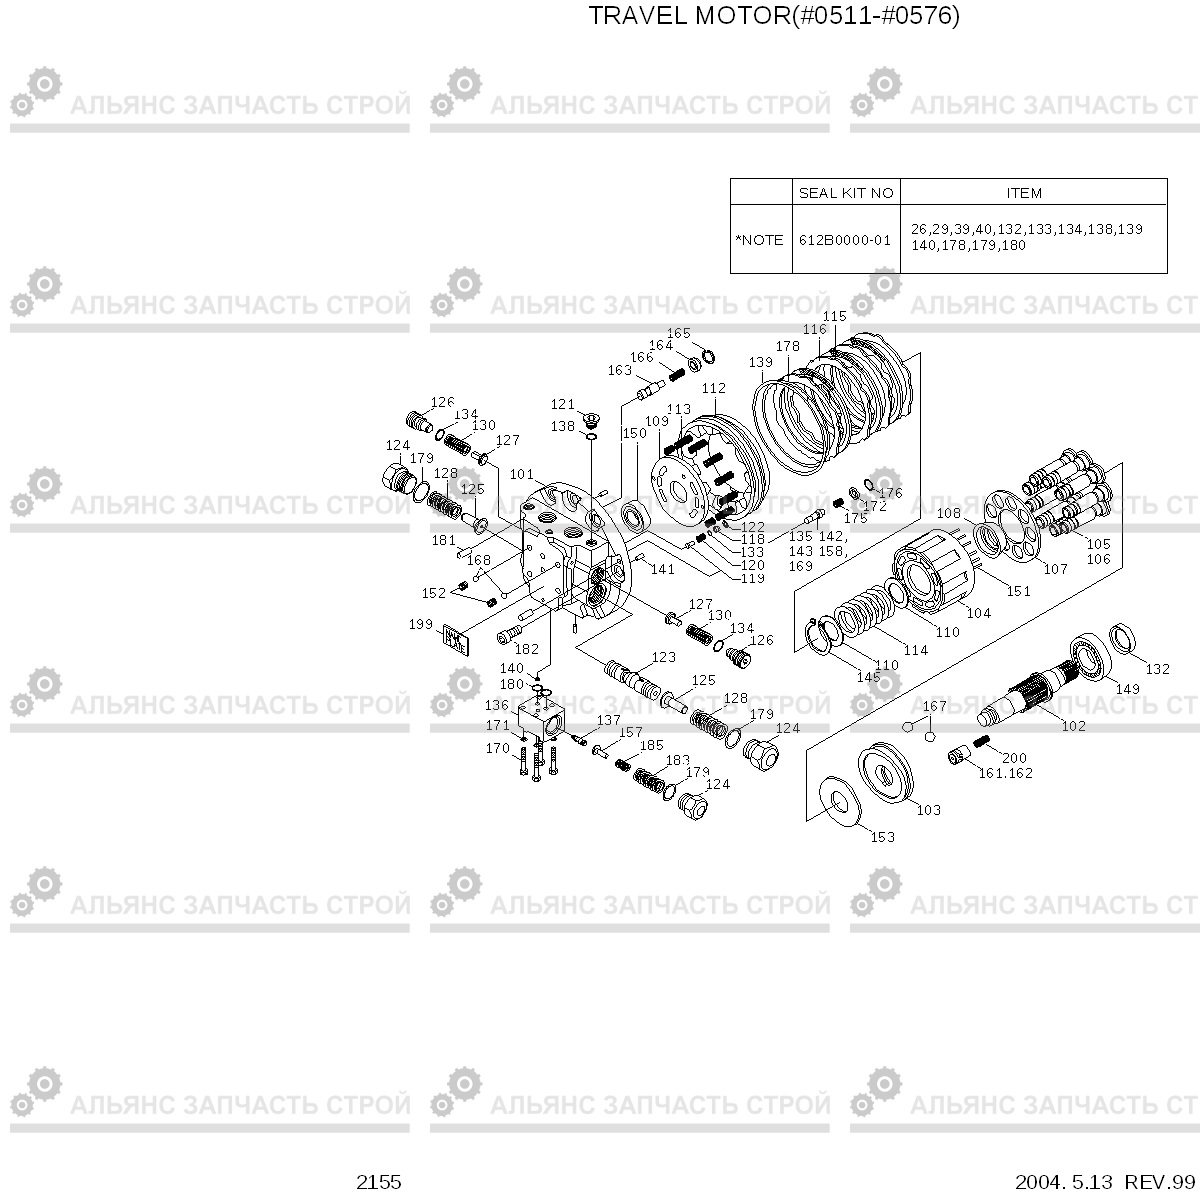 2155 TRAVEL MOTOR(#0511-#0576) R210LC-3H, Hyundai